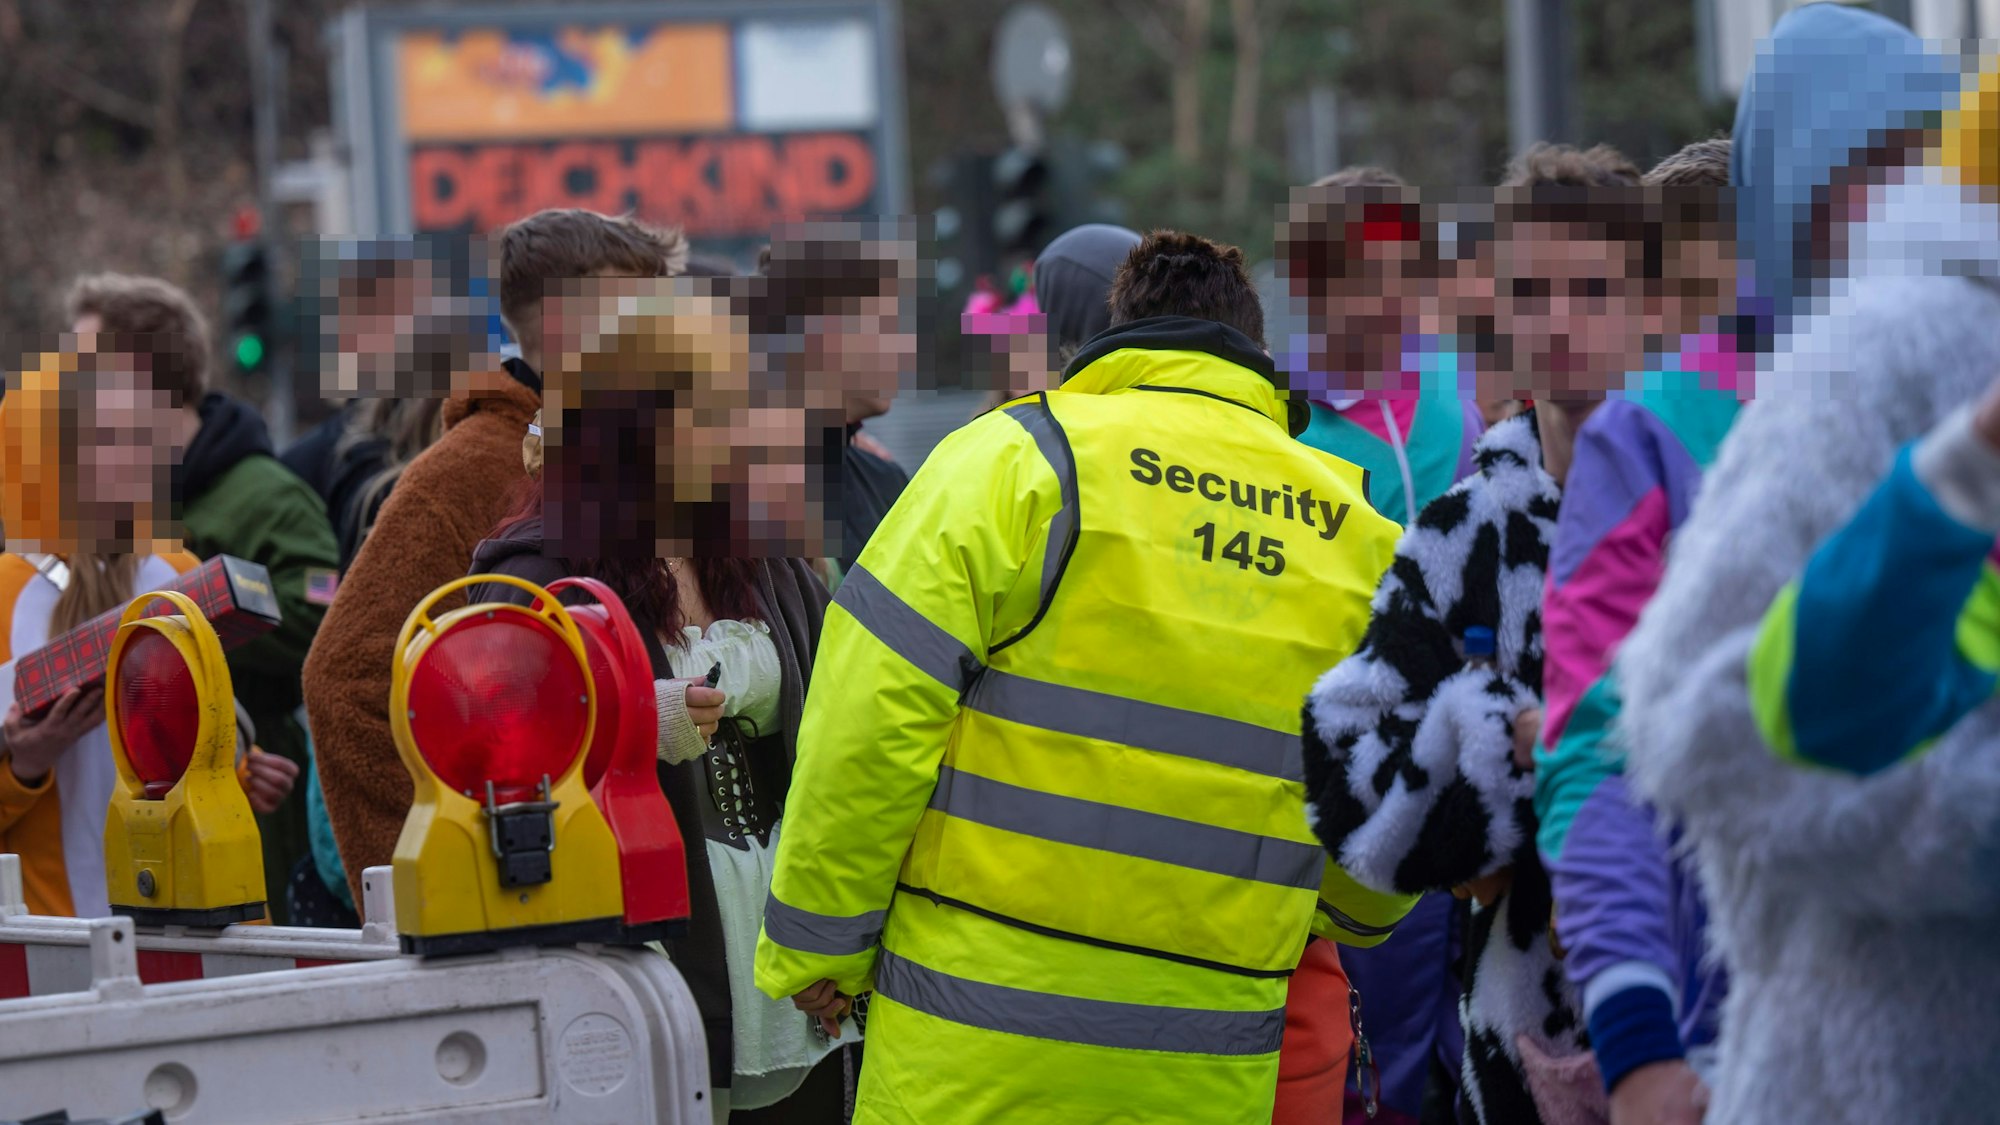 Zu sehen sind eine Gruppe von Menschen. Ein Security-Mitarbeiter in einer gelben Jacke ist in der Rückansicht zu sehen.